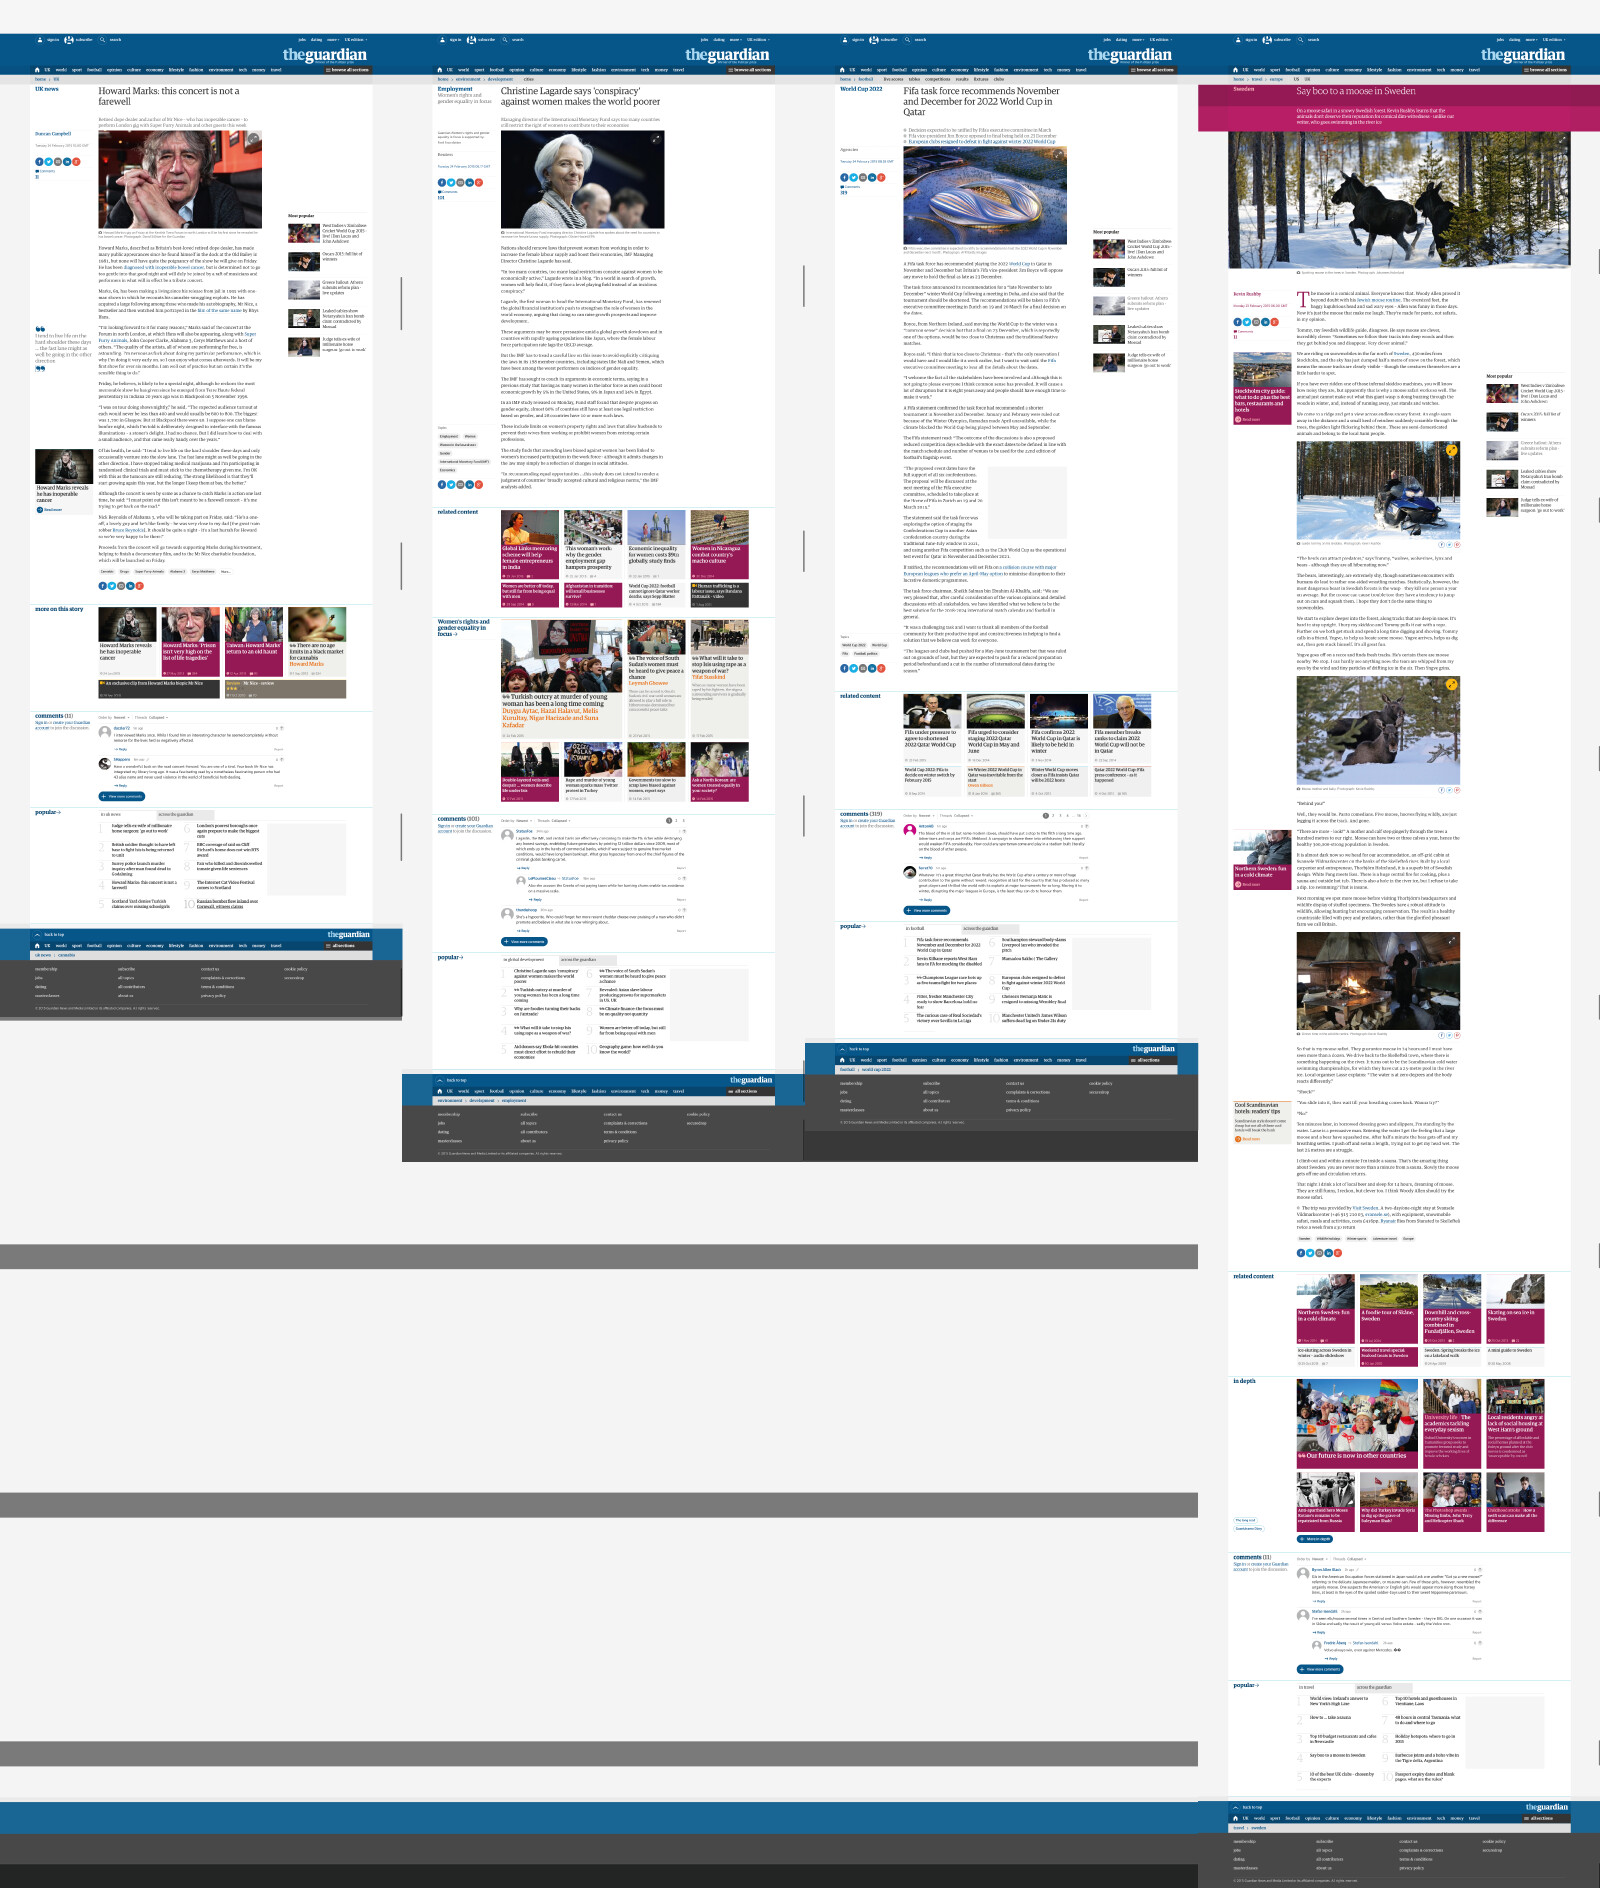 Montage von vier zufällig gewählten Artikelseiten des Guardian, Bild: Bildschirmfotos vom 24.02.2015